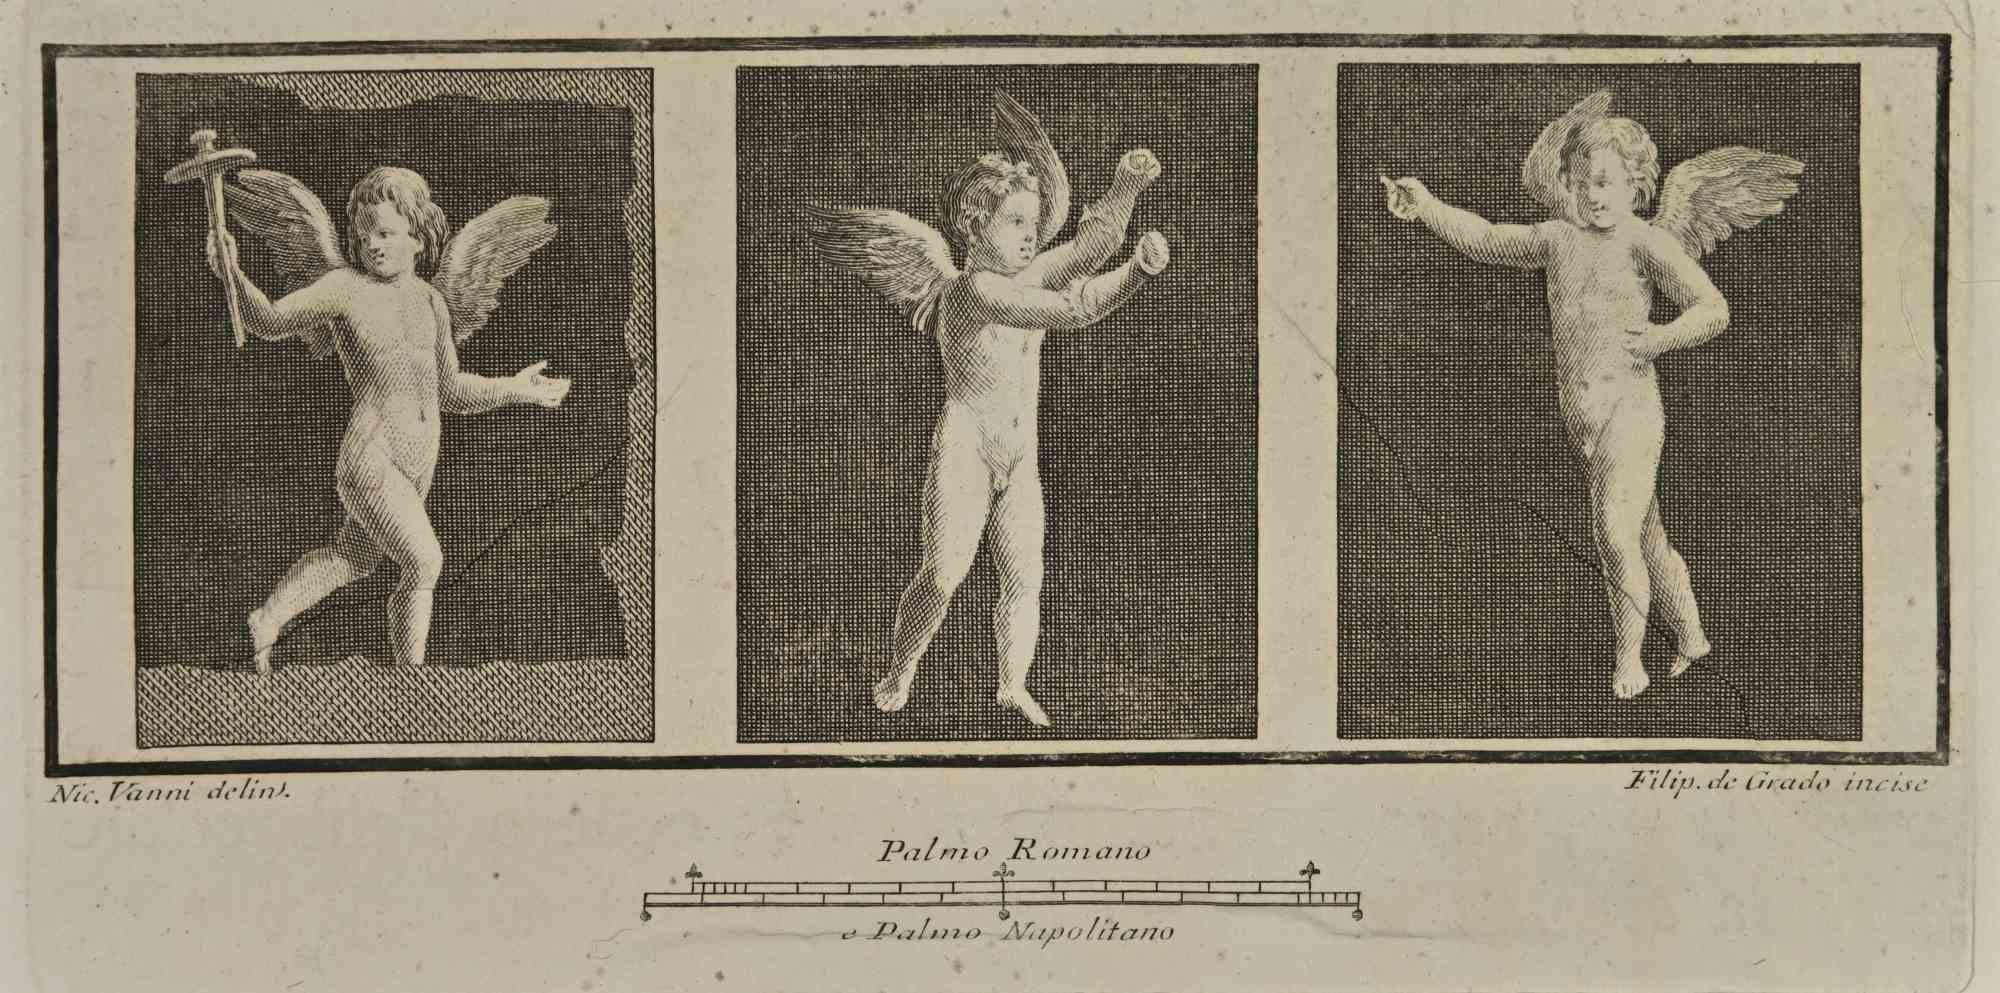 Cupido In Pompeian Fresco from "Antiquities of Herculaneum" ist eine Radierung auf Papier, die von Filippo De Grado im 18.

Signiert auf der Platte.

Guter Zustand mit einigen Faltungen.

Die Radierung gehört zu der Druckserie "Antiquities of